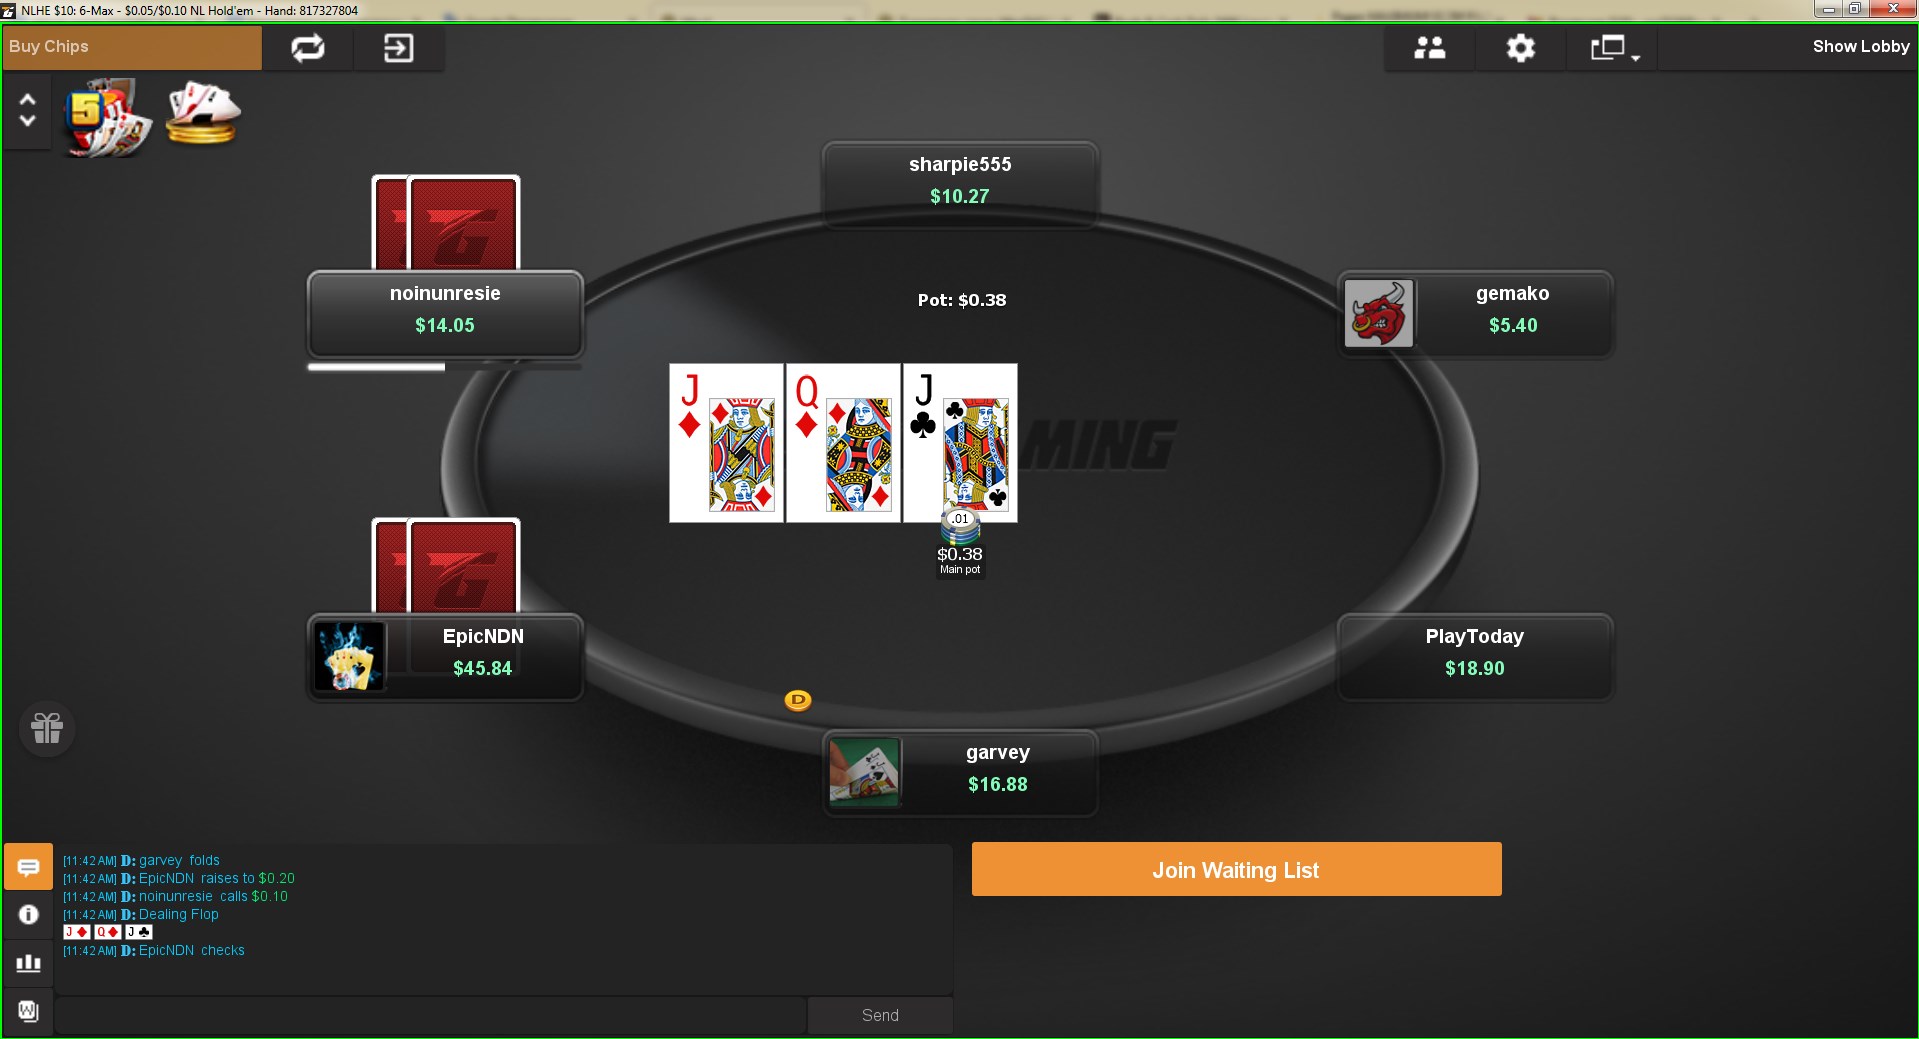 Игра в Boost покер на Tigergaming ведется только на NL2.